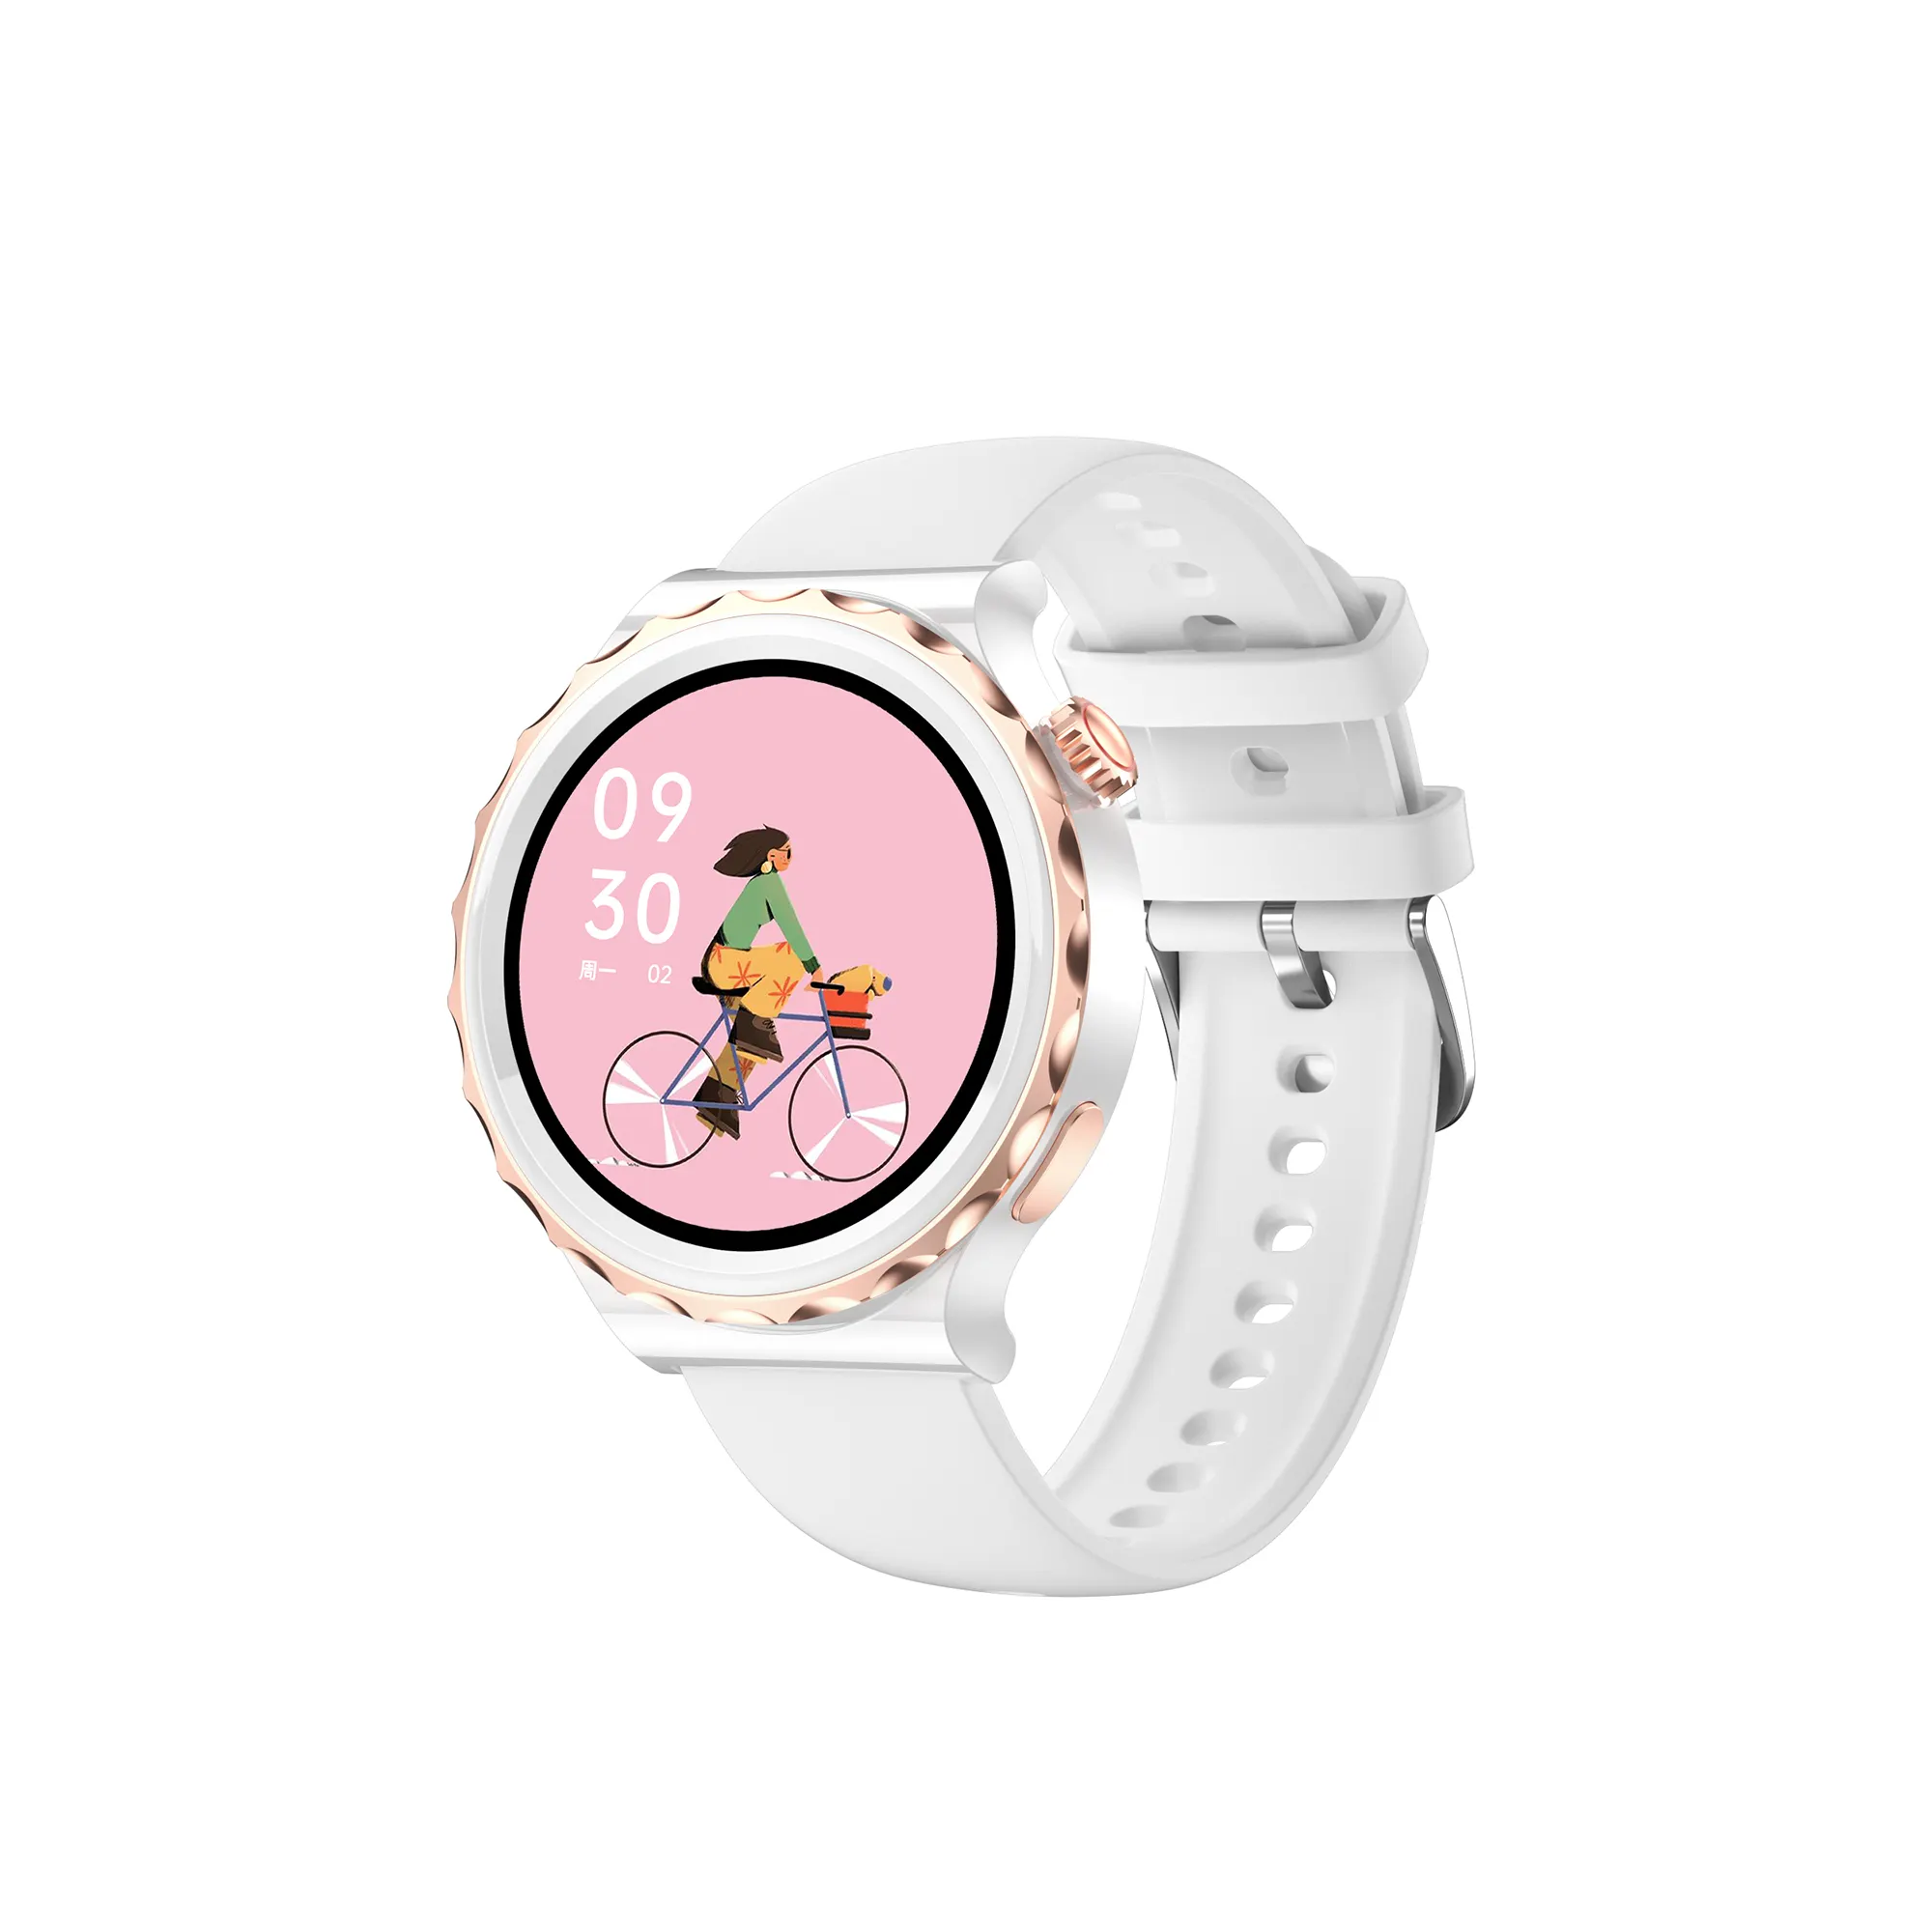 Smartwatch infantil ip68, relógio inteligente esportivo com tela redonda, à prova d'água, para iphone